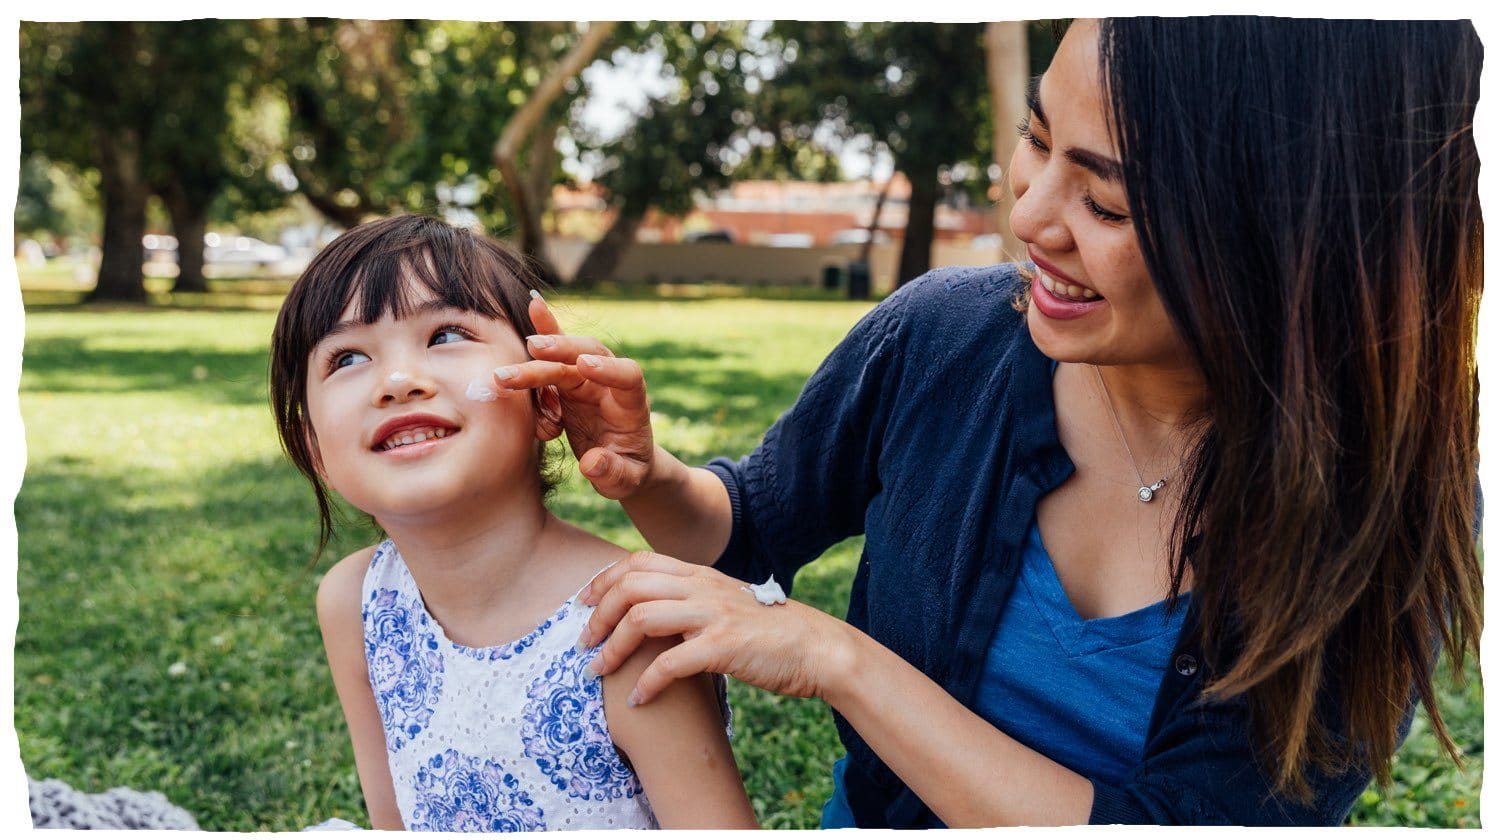 Une femme appliquant une lotion sur la joue d’un enfant.